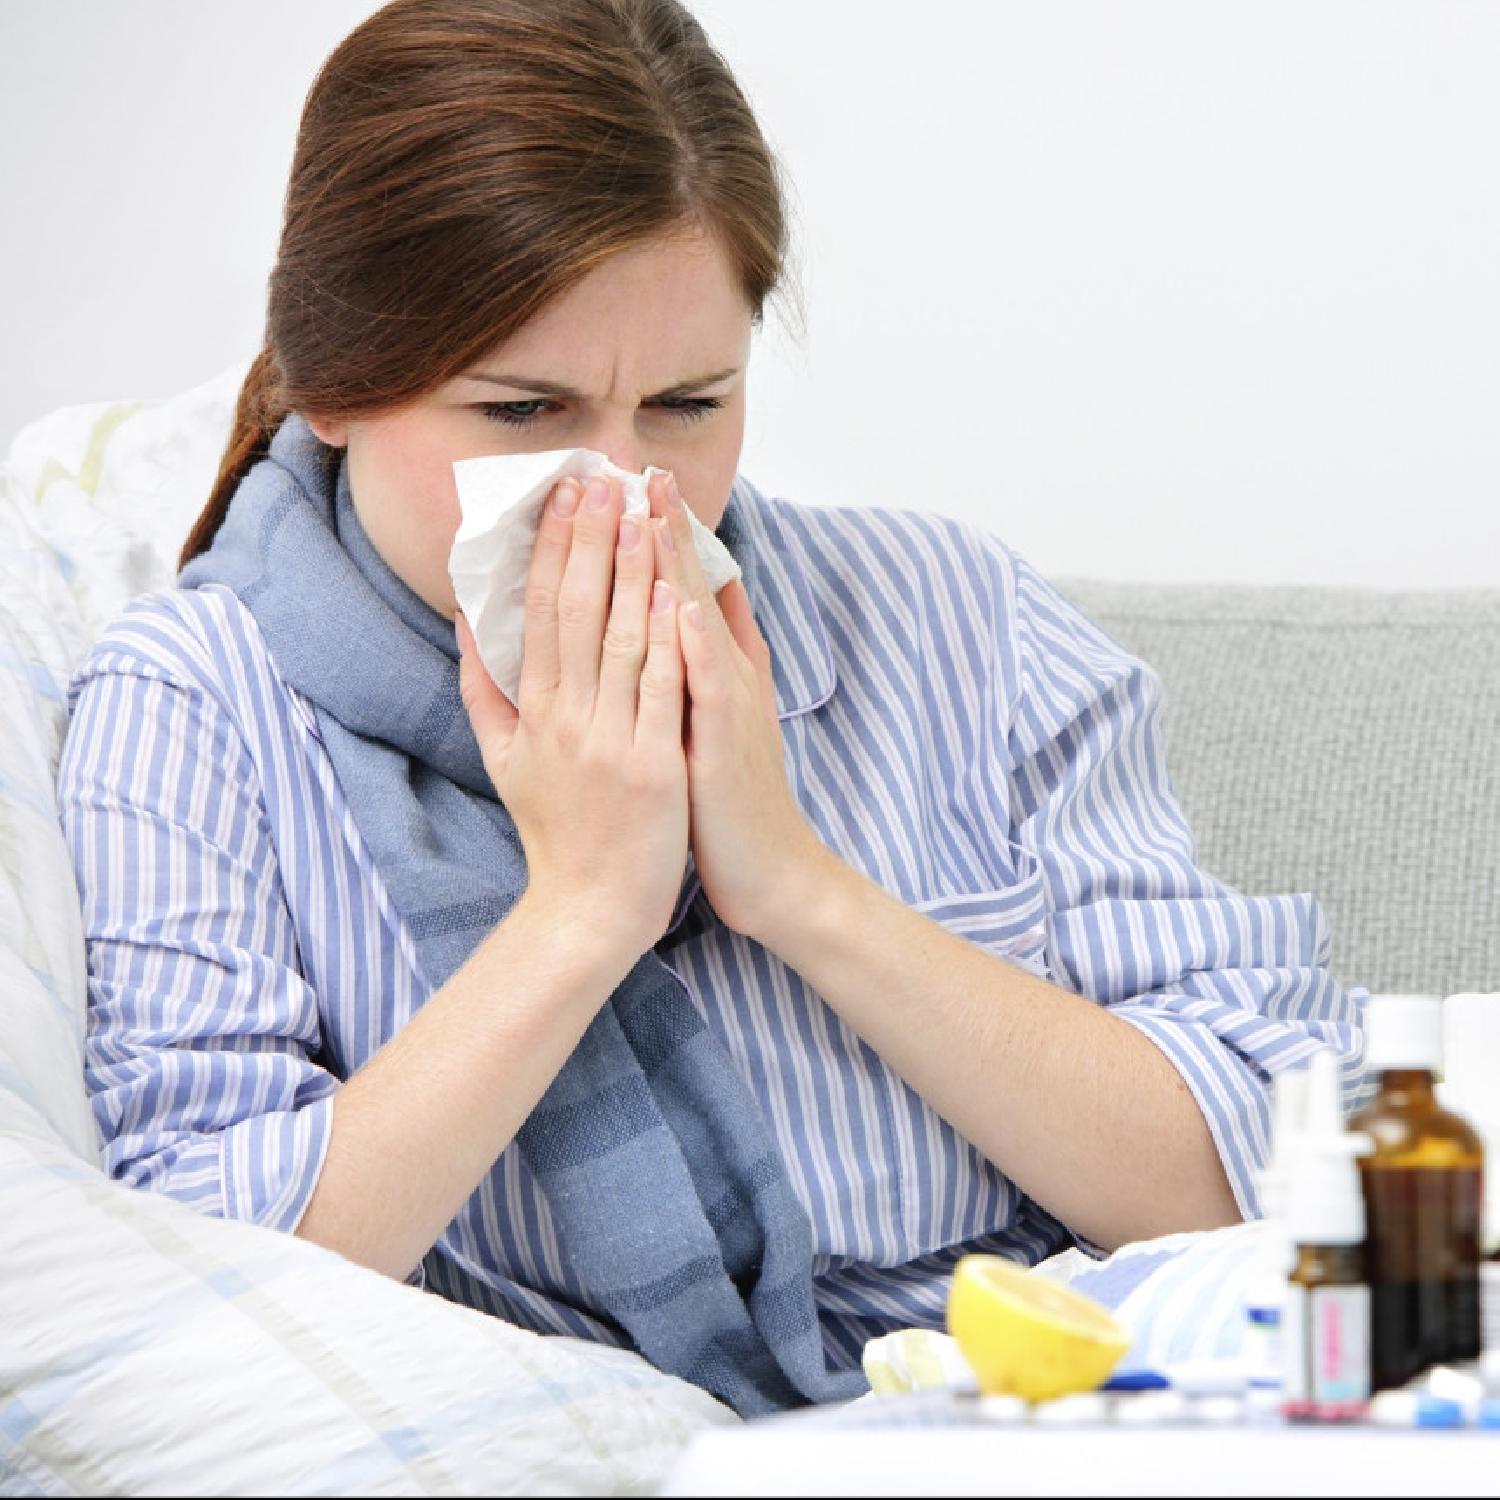 كيف تميّز بين الإصابة بكورونا ونزلات البرد والإنفلونزا؟